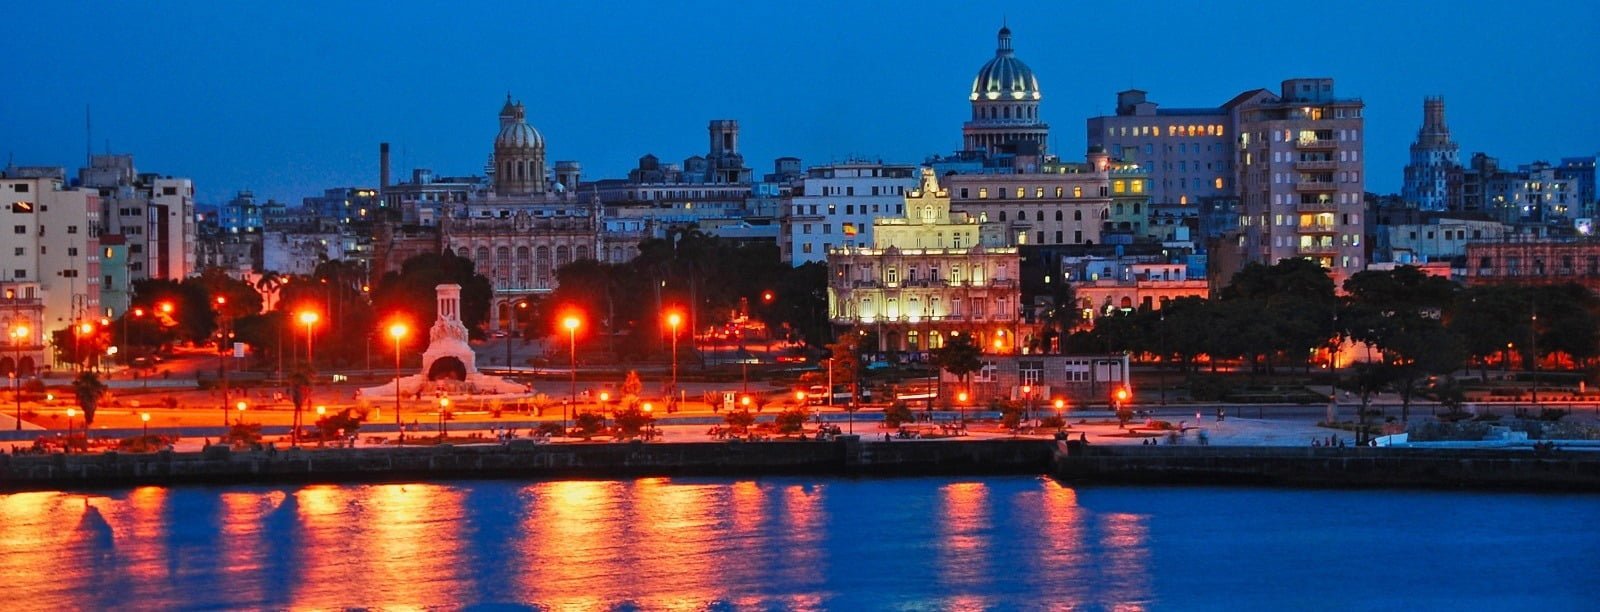 Habana Vieja de noche - Mi cuenta